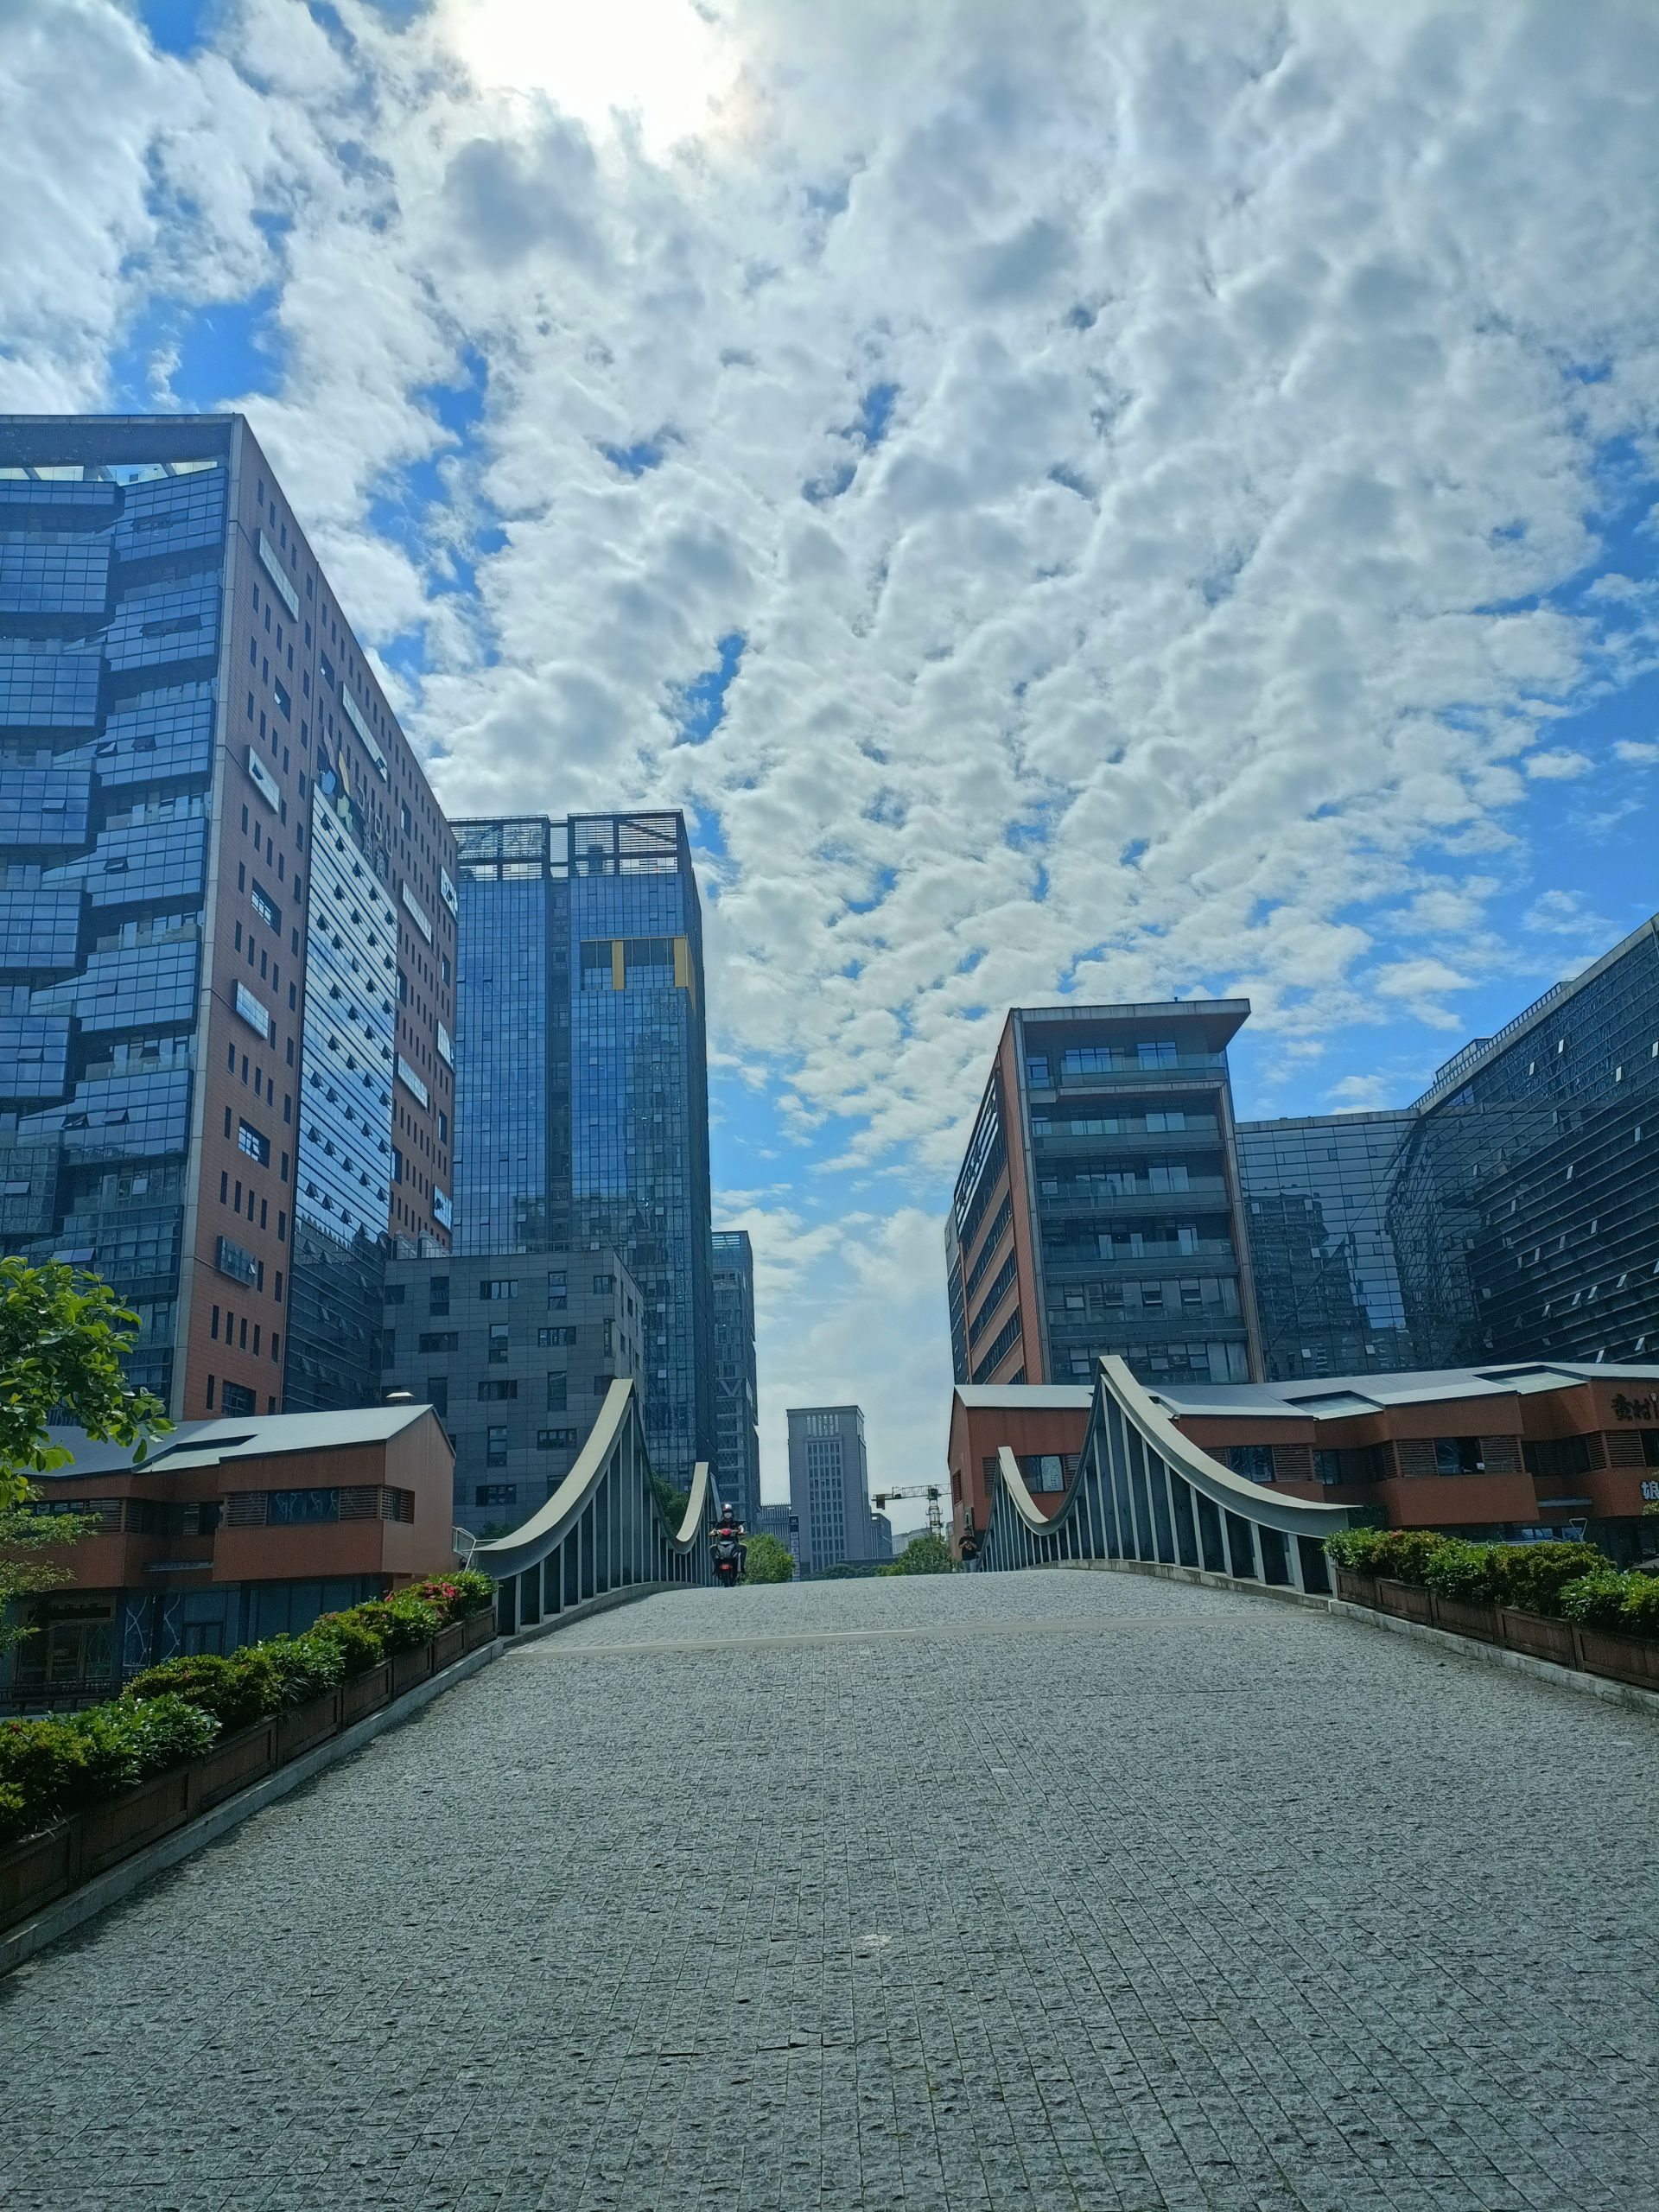 上海新广索菲特酒店将于2025年在奉贤区开业